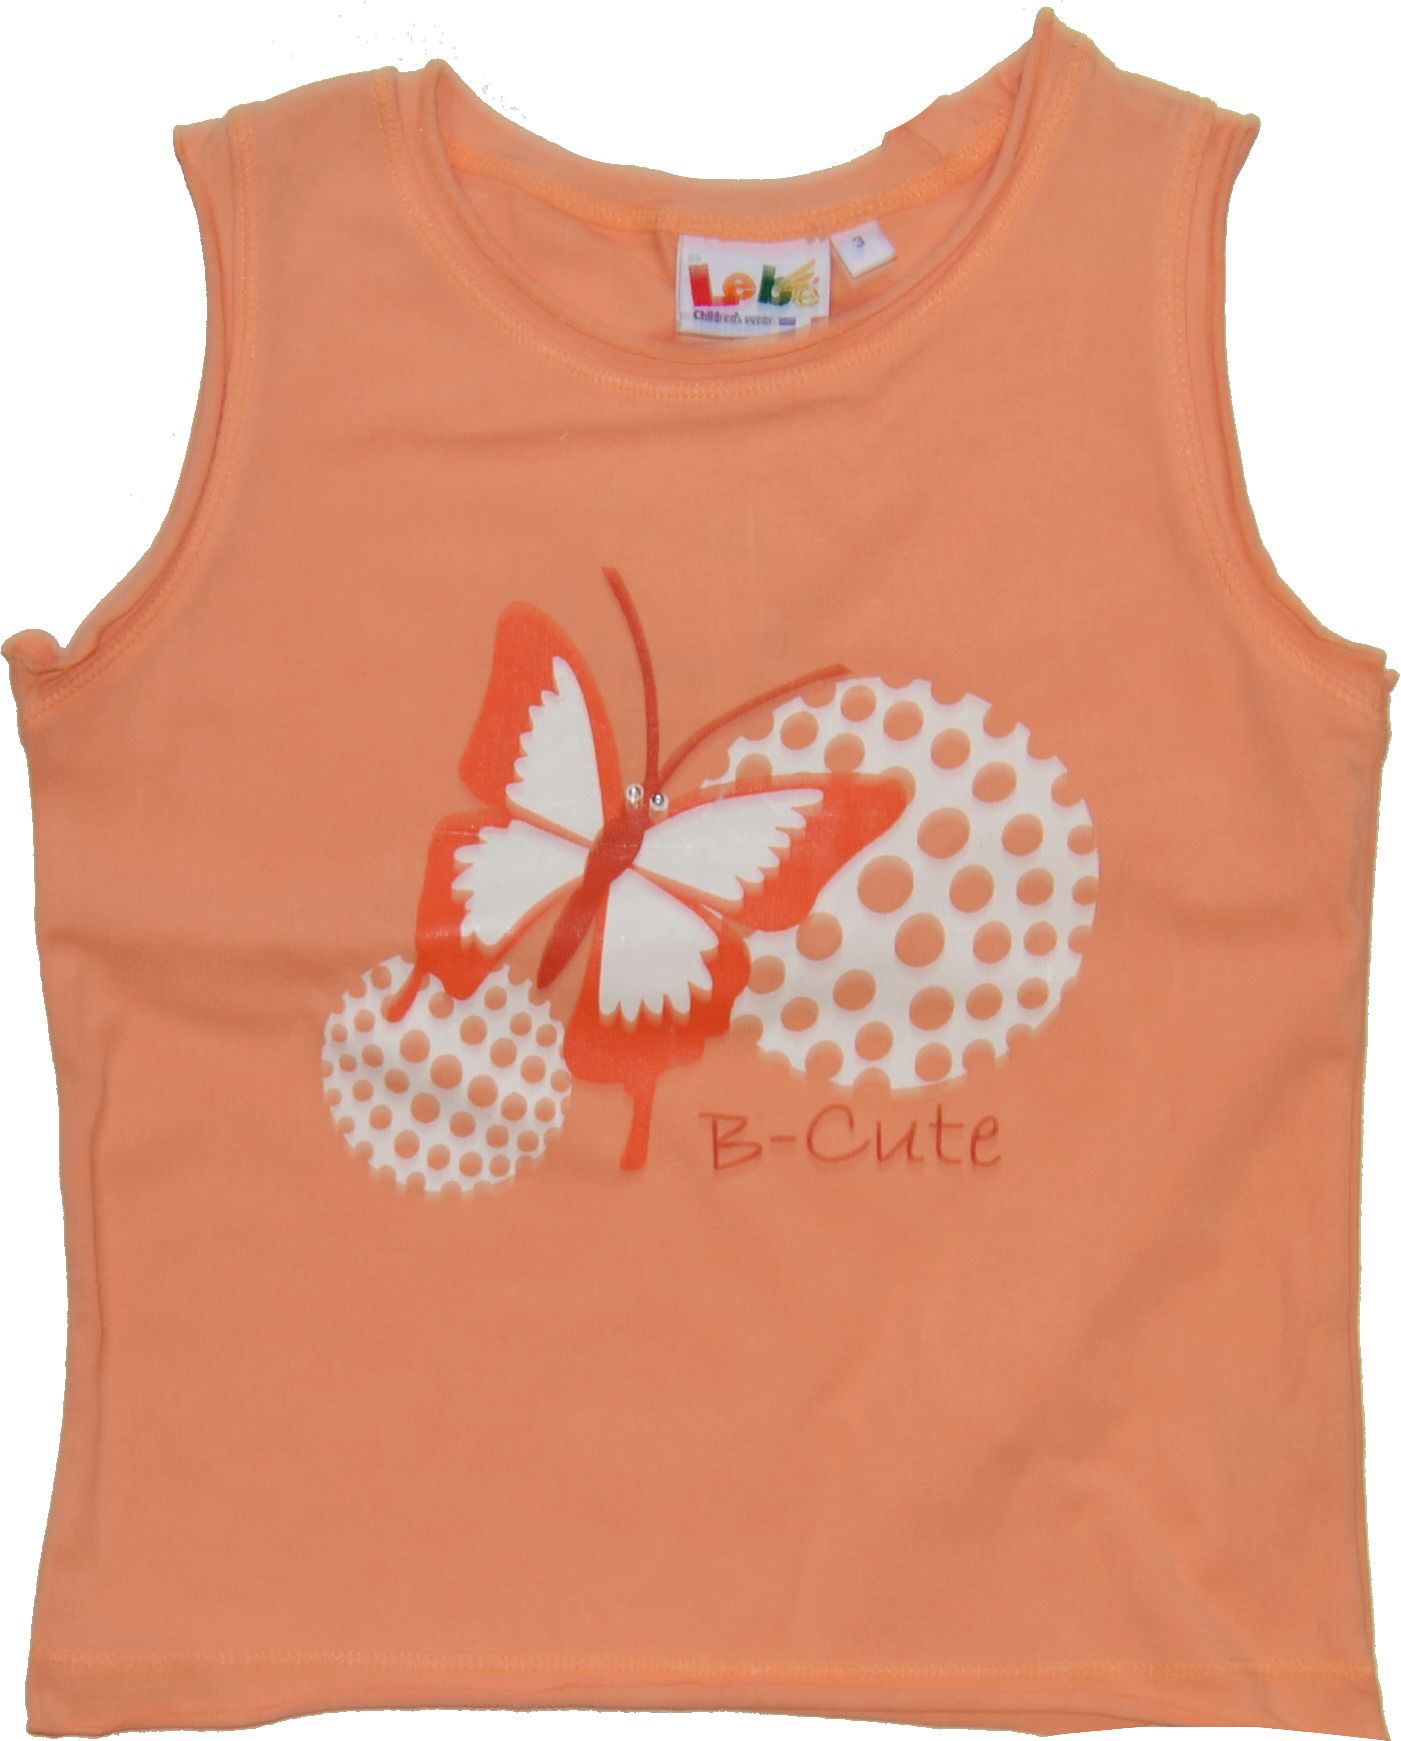 Dětské tričko nátělník, Lebe, oranžové s motýlkem, velikost 3 - obrázek 1